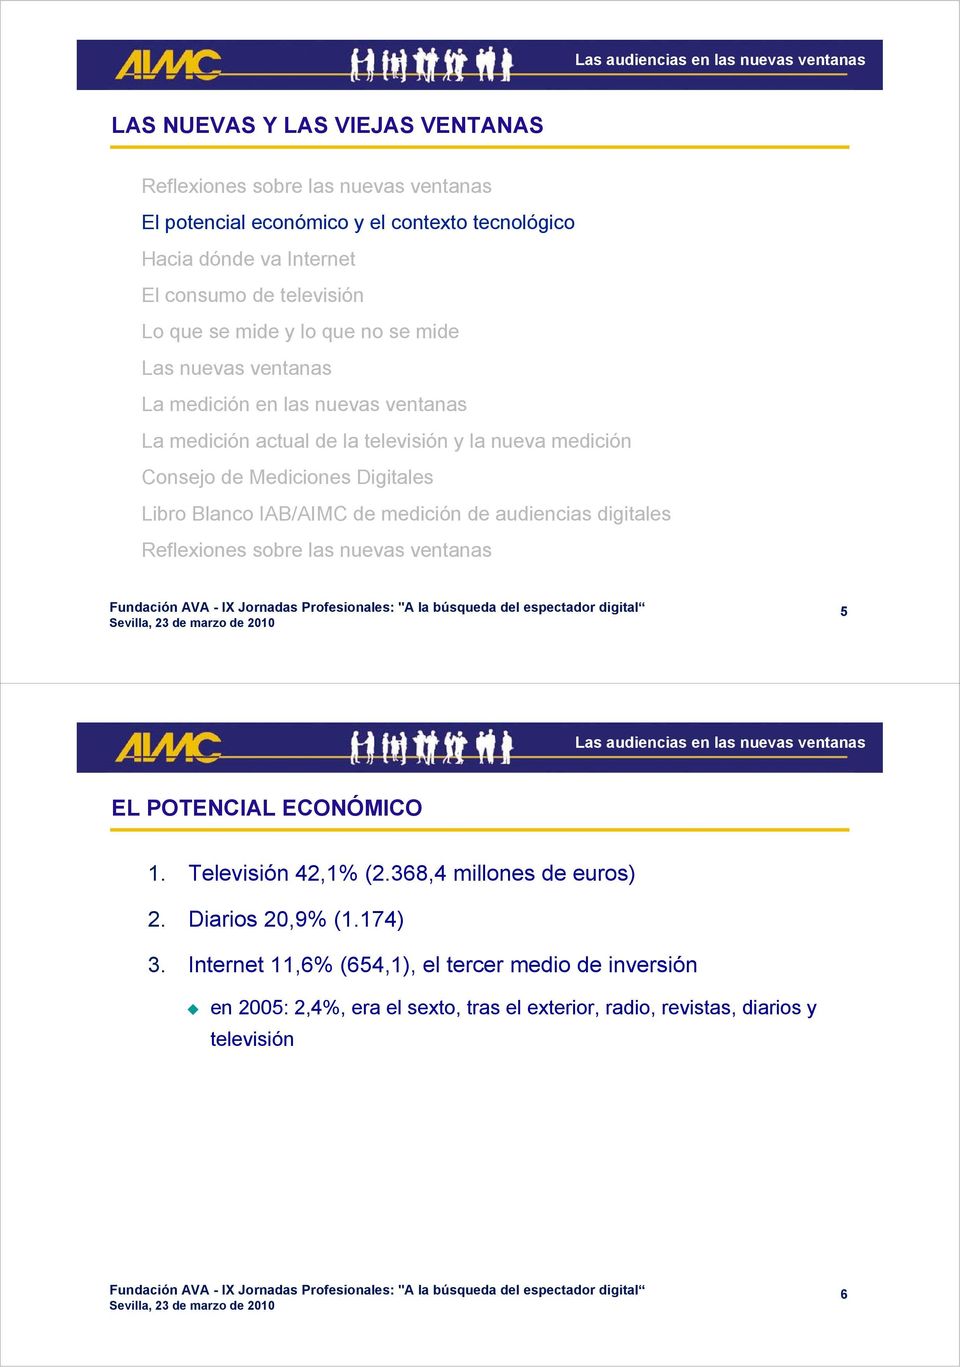 Digitales Libro Blanco IAB/AIMC de medición de audiencias digitales 5 EL POTENCIAL ECONÓMICO 1. Televisión 42,1% (2.368,4 millones de euros) 2.